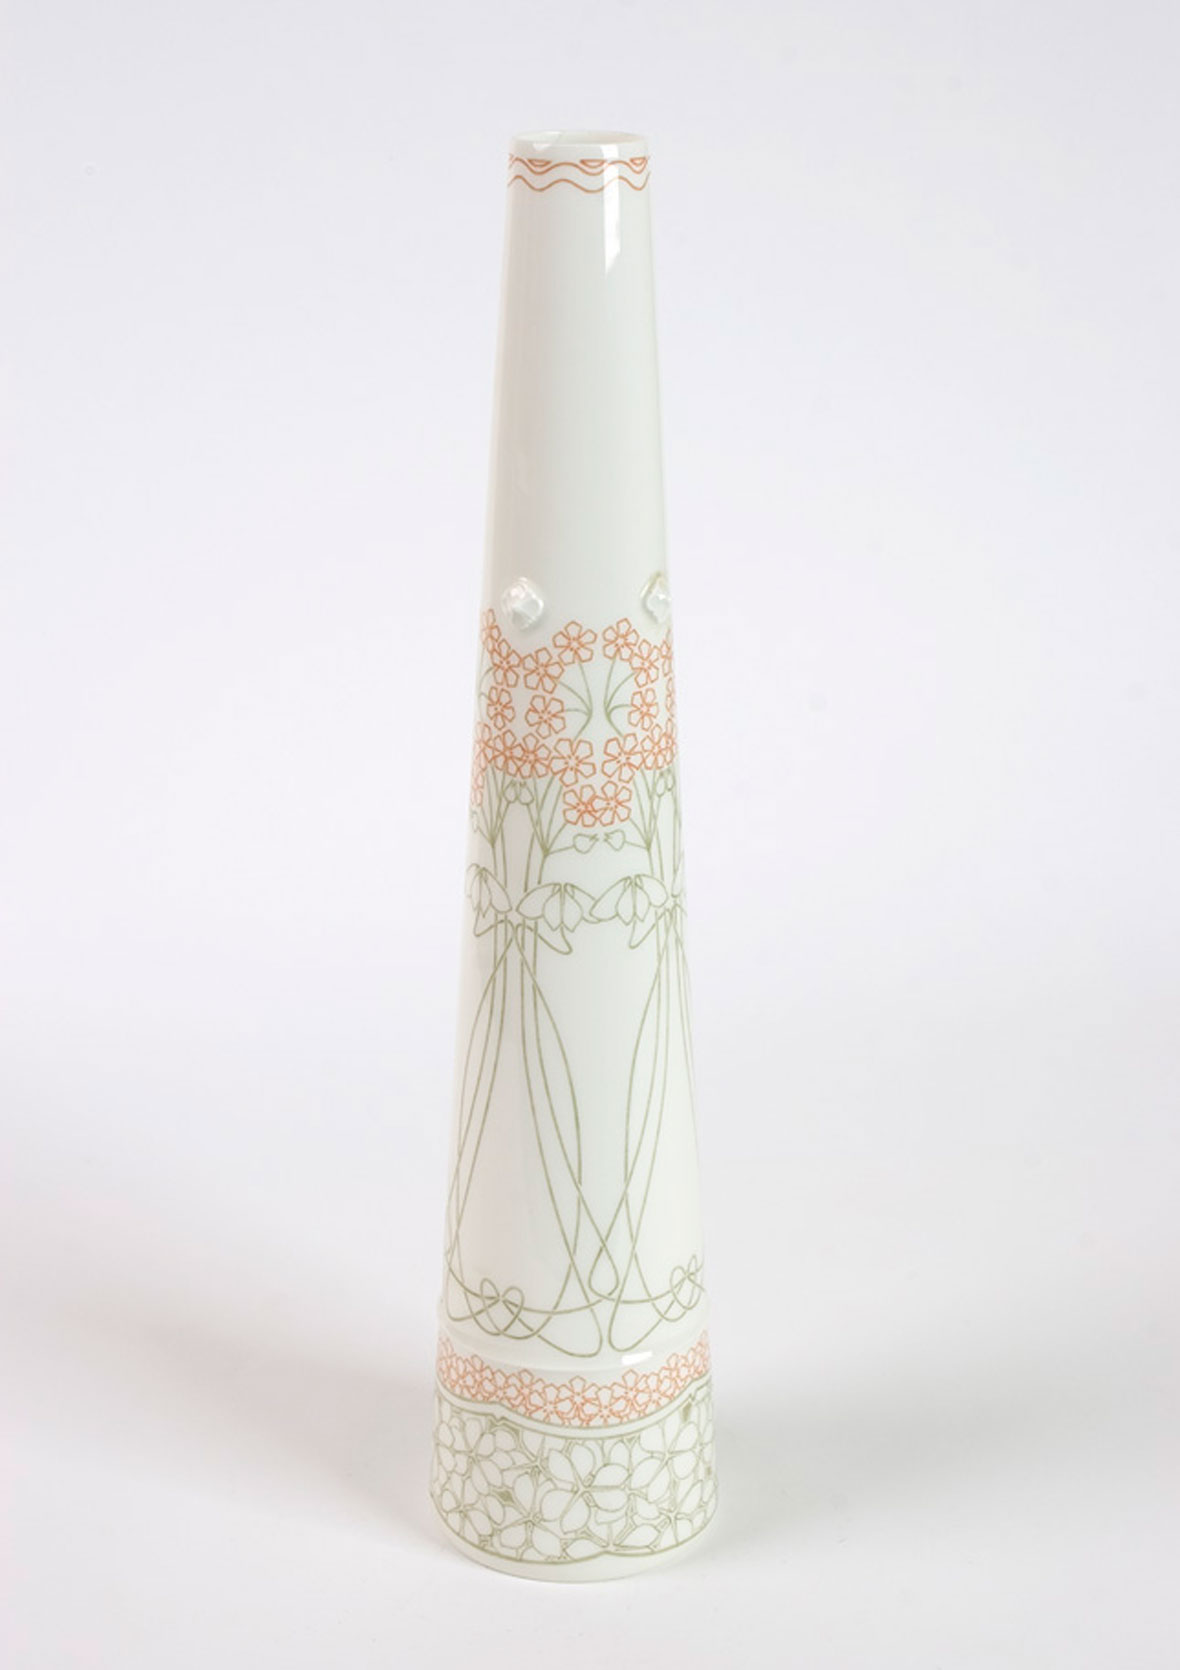 Vase de Bougival by Sevres